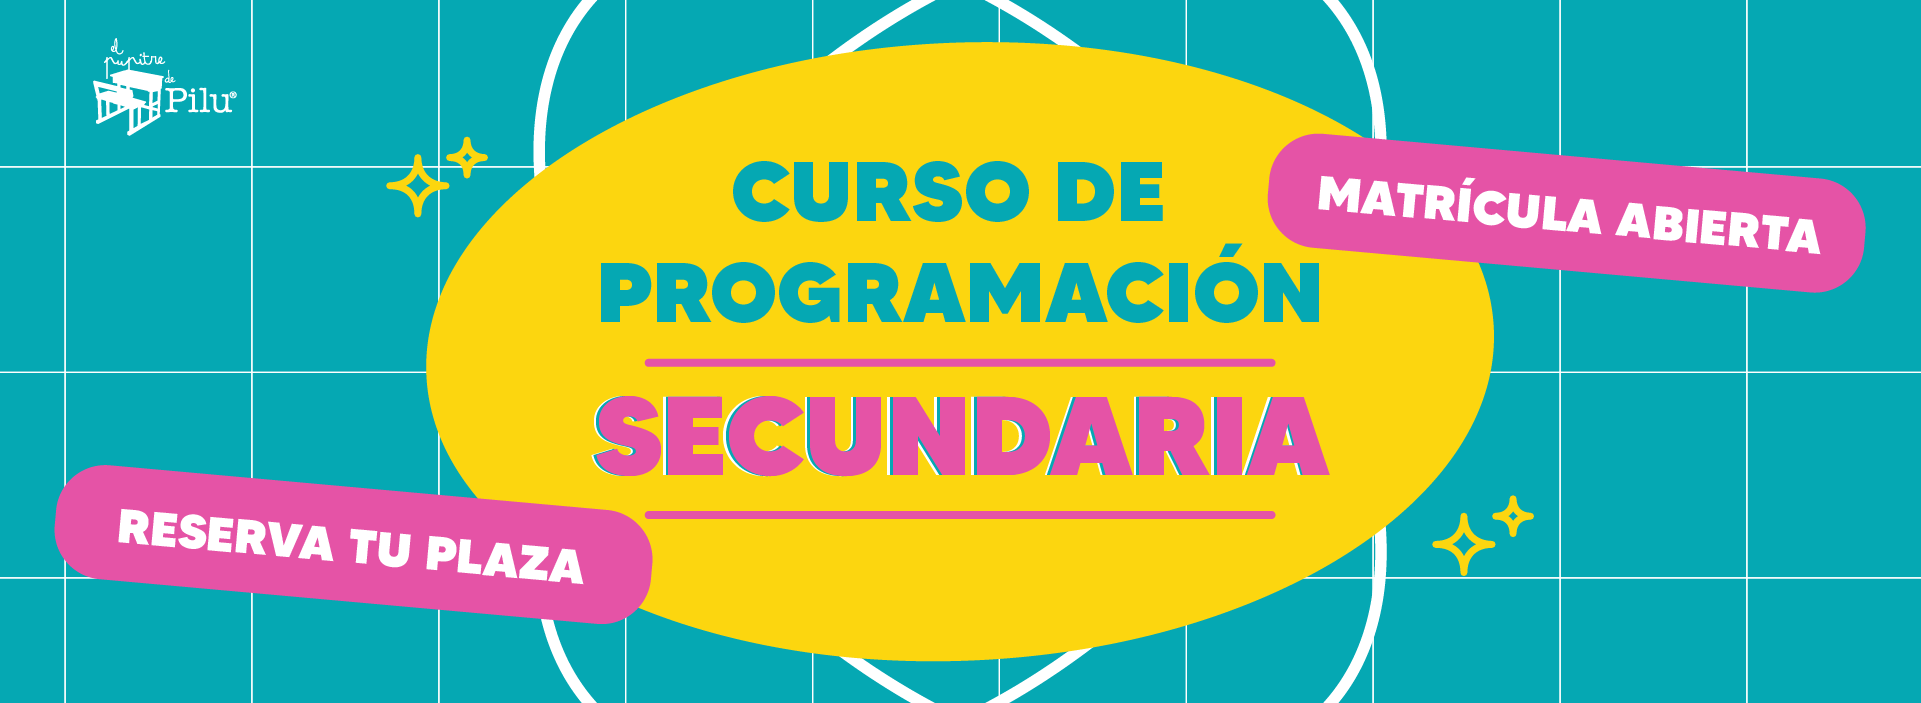 CURSO SECUNDARIA WEB-02